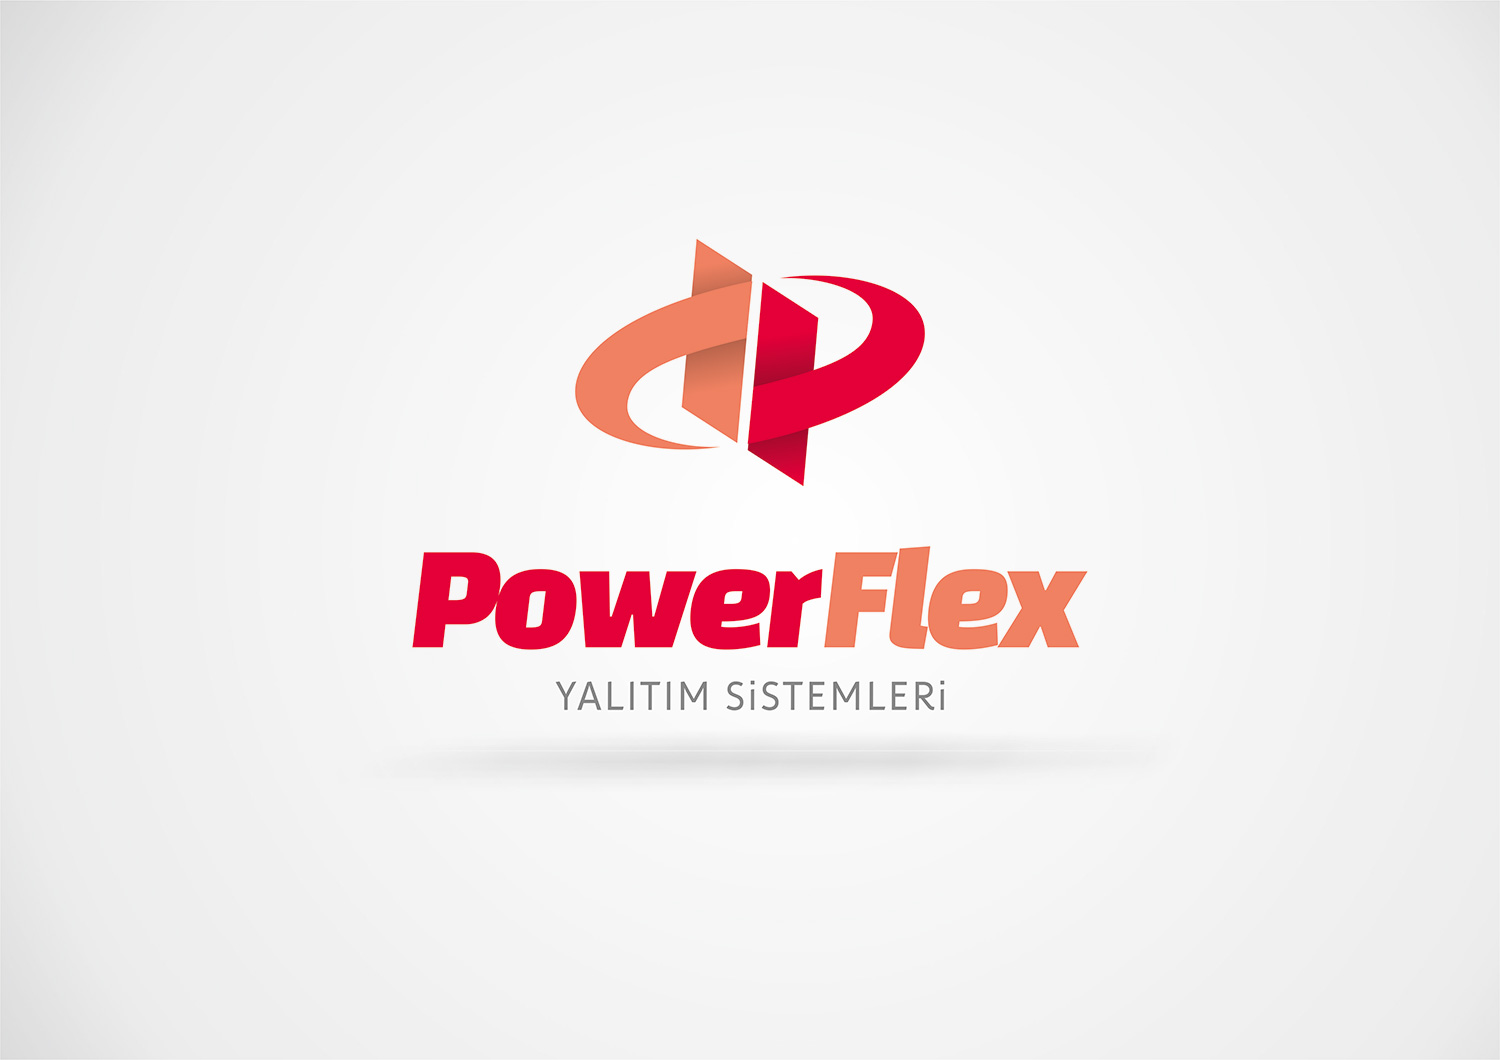 power flex yalitim elazig logo